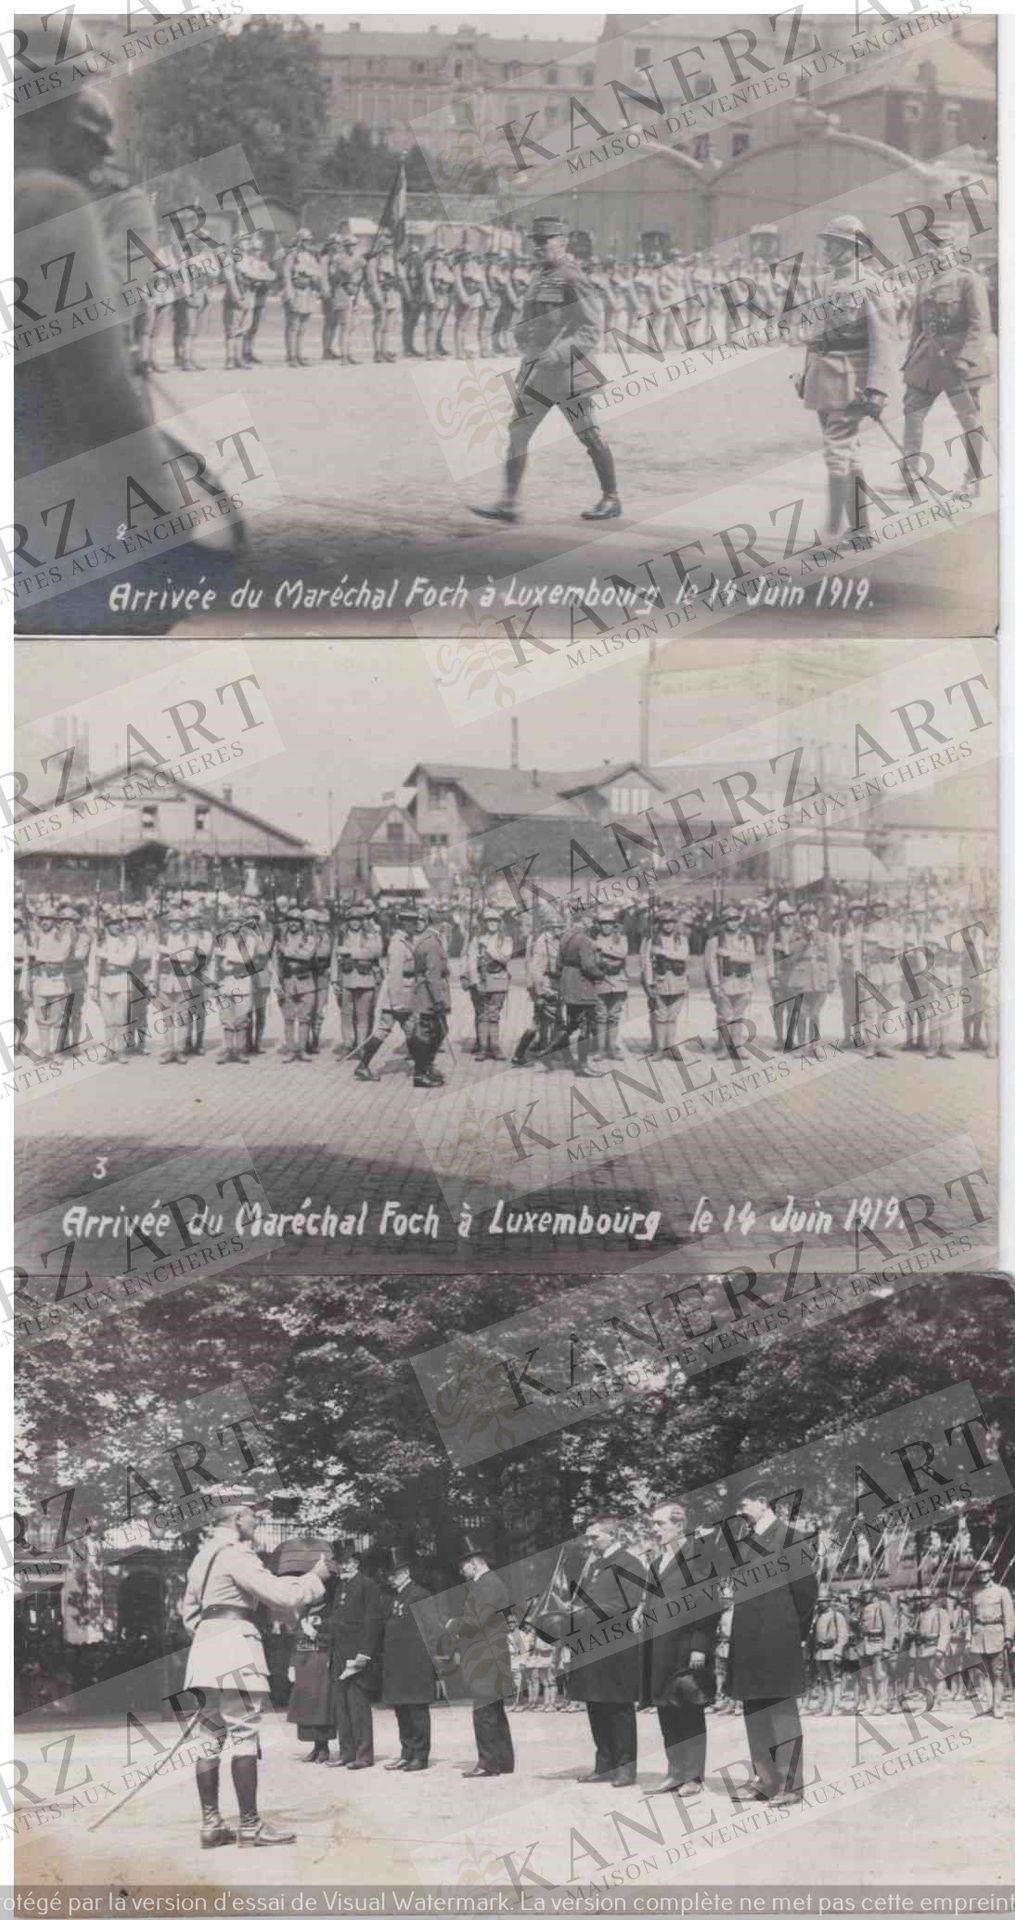 Null (WAR I) 3张福煦元帅1919年6月14日抵达卢森堡的照片：1.Wirol #2, 2.Wirol 967 #3, 3.Aloyse Anen.